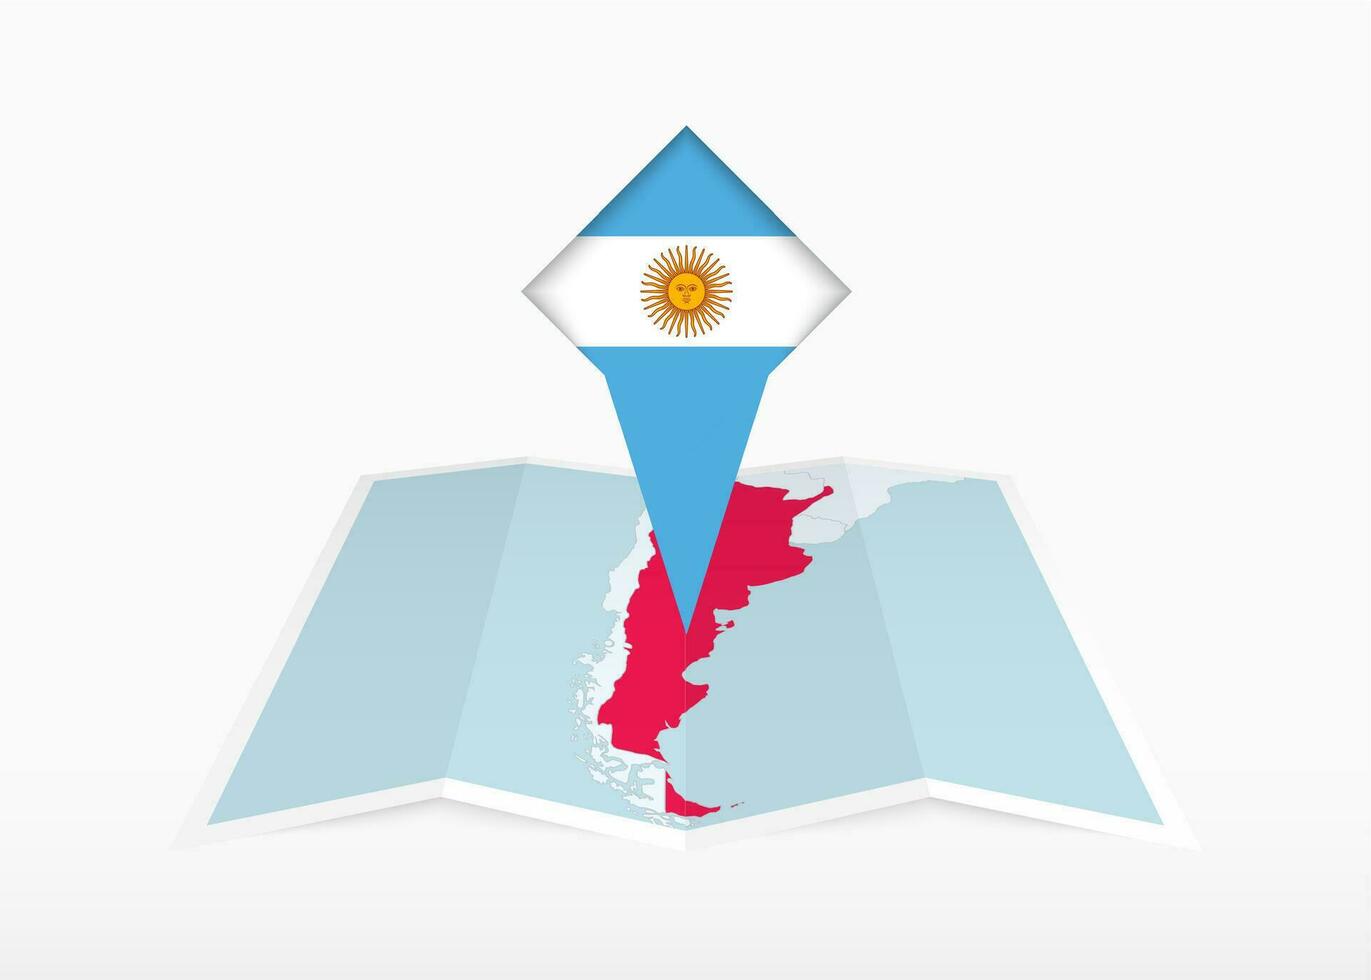 Argentinien ist abgebildet auf ein gefaltet Papier Karte und festgesteckt Ort Marker mit Flagge von Argentinien. vektor